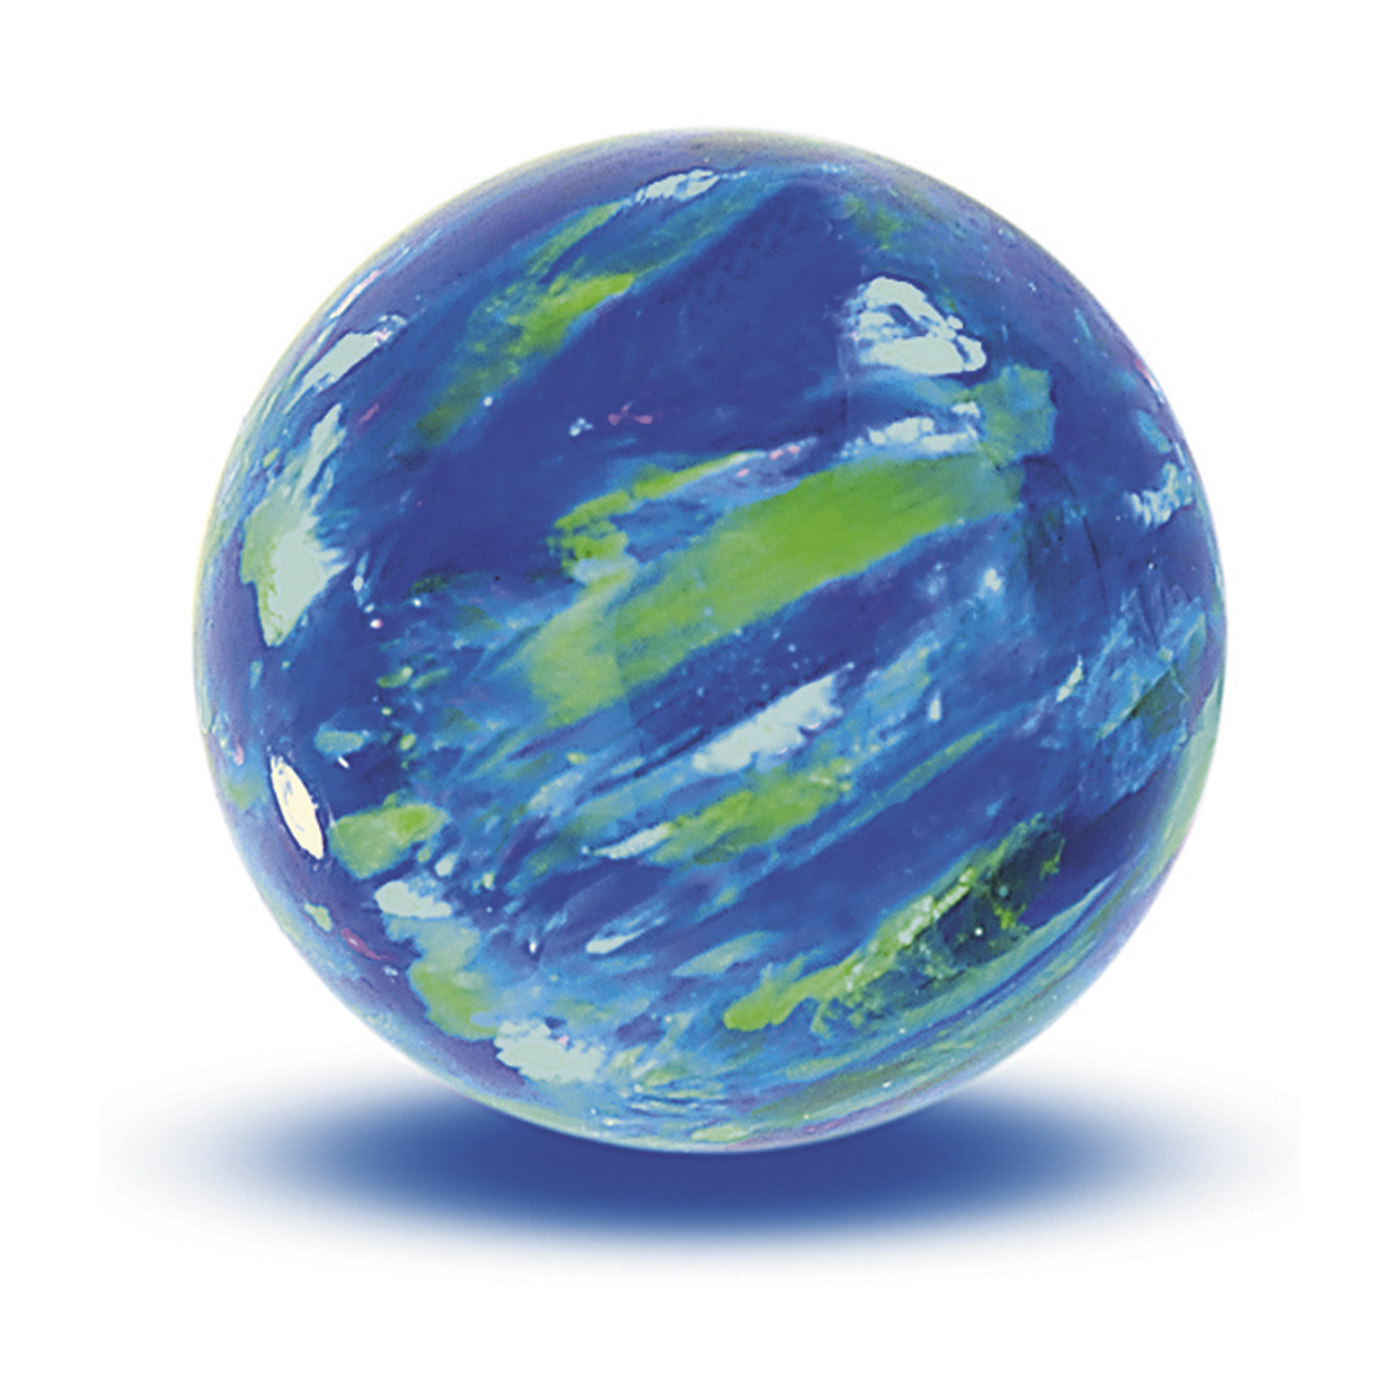 Opal Imitation Ball, Cyan, ø 12 mm, Drilled Through - 1 piece